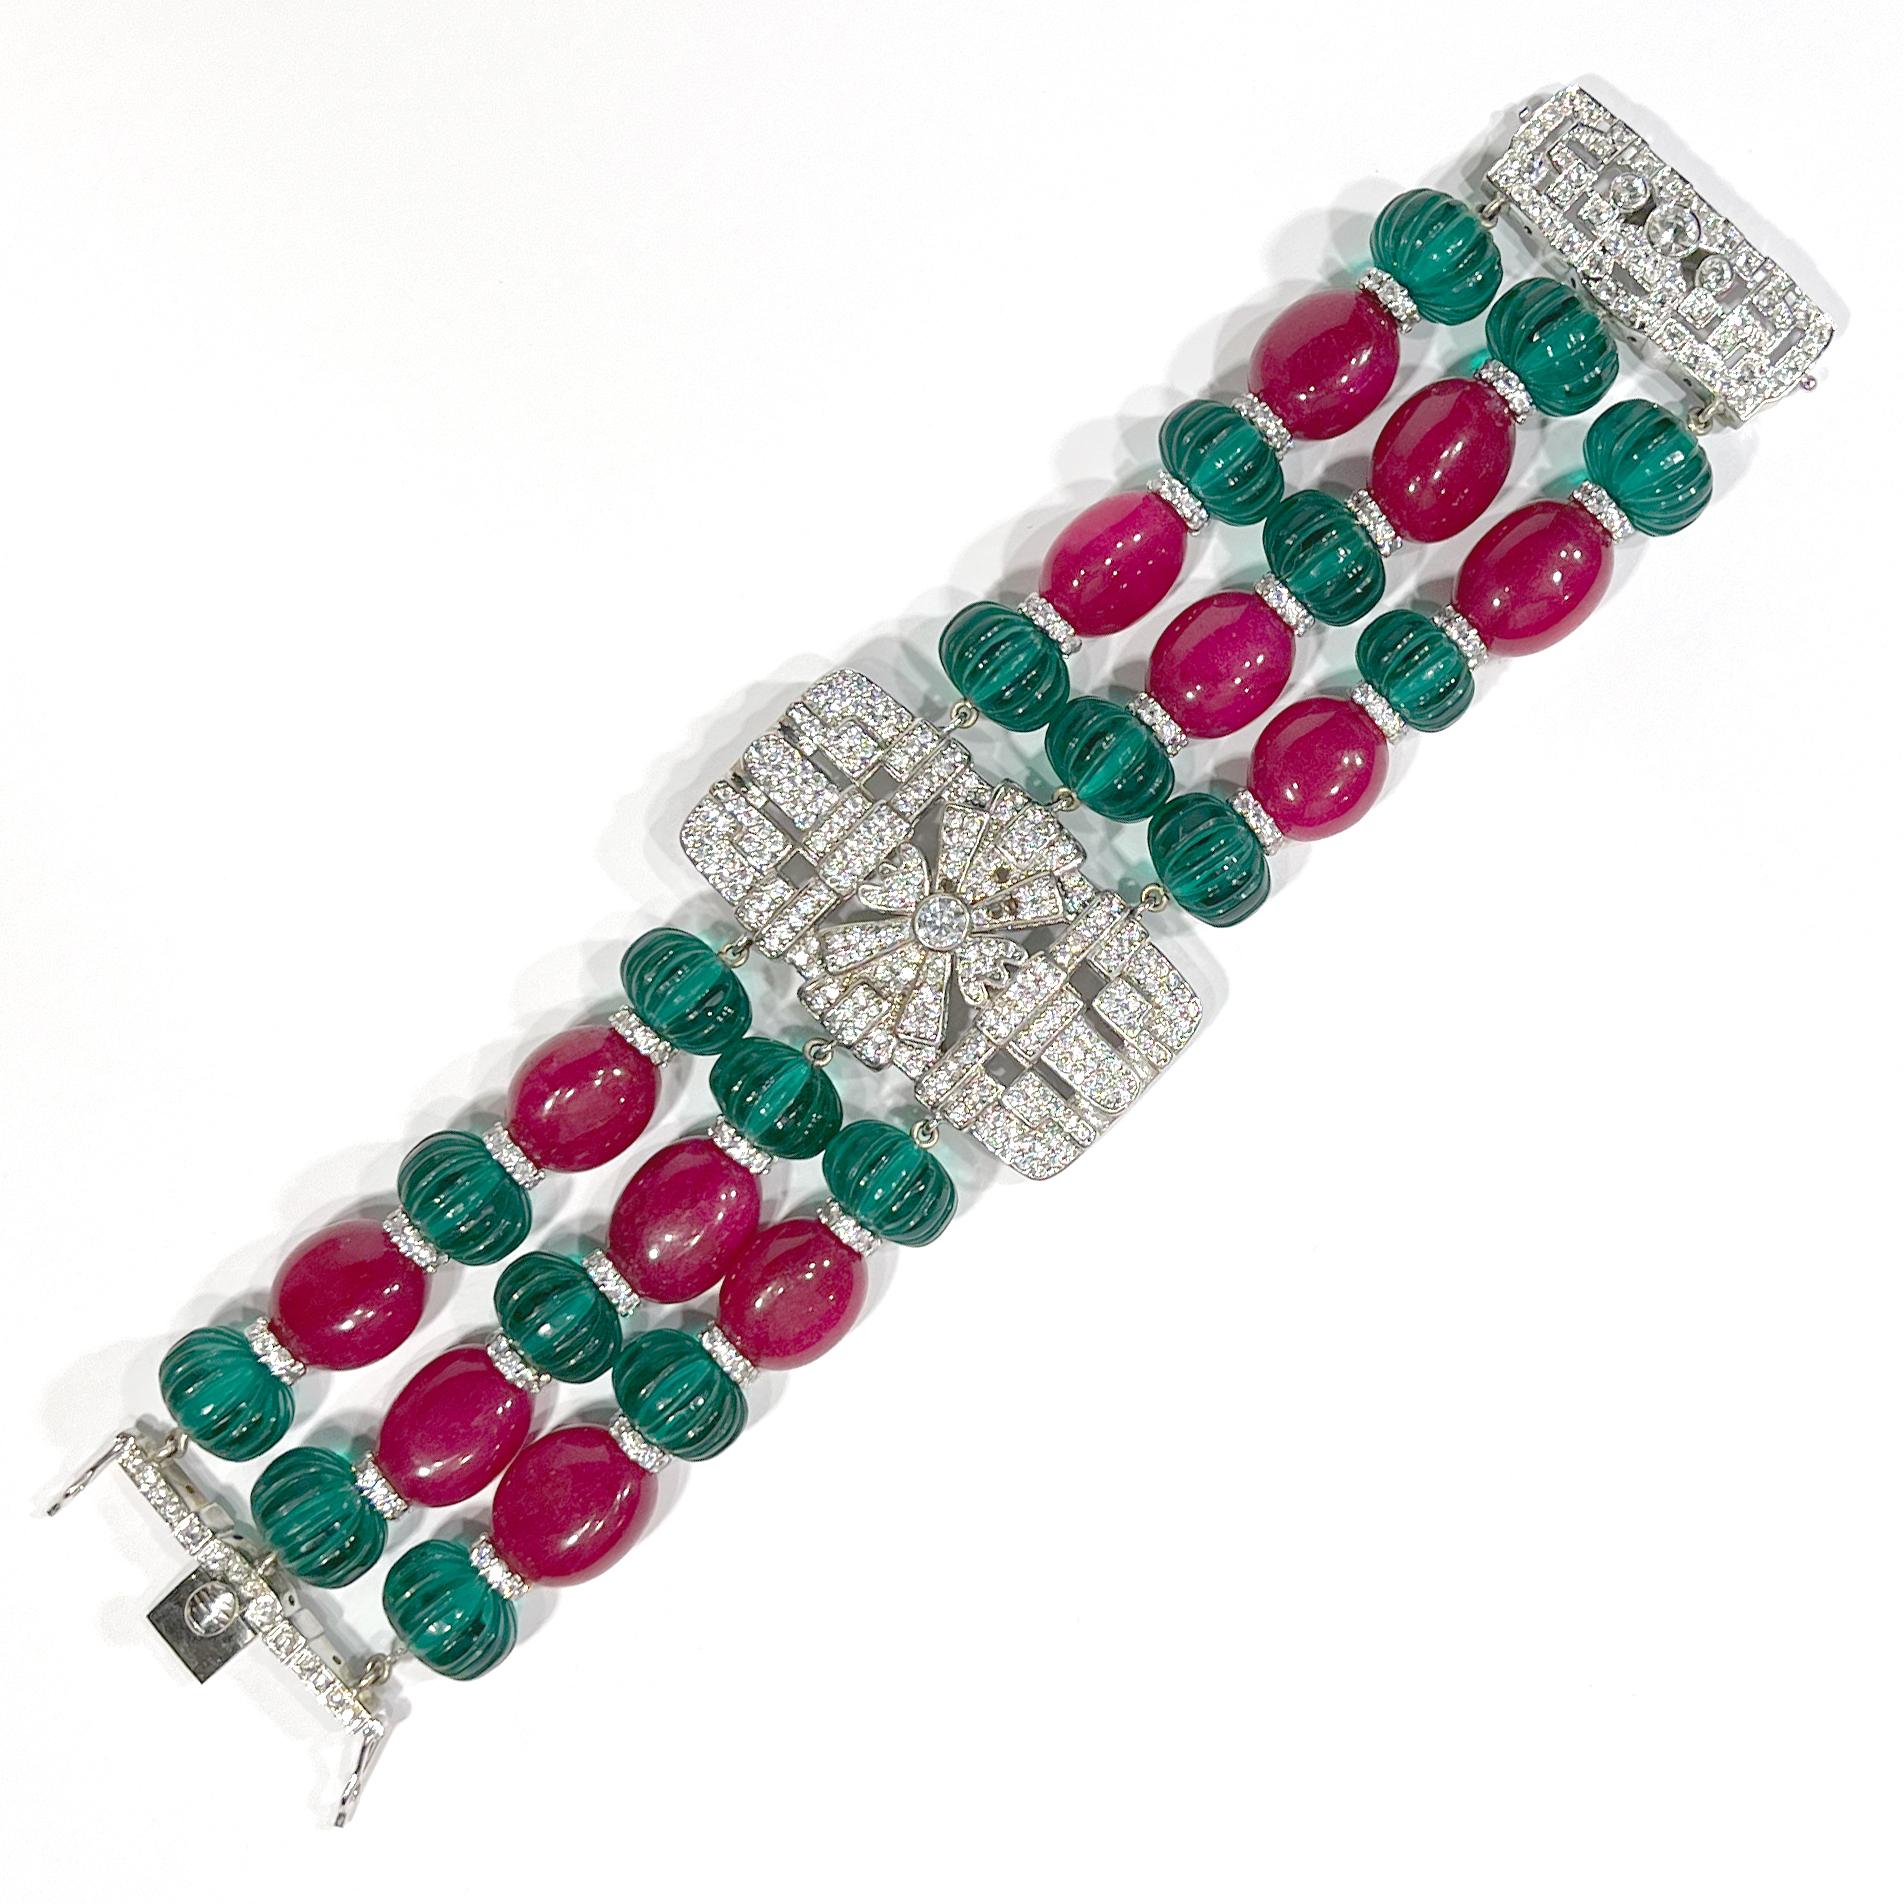 
Art Deco Cartier Stil Smaragd geschnitzt Perlen, Cabochon Rubine, Diamanten Modeschmuck Armband in rhodiniert Sterling Silber montiert. Von Menschenhand geschaffene Edelsteine von höchster Qualität. Atemberaubende große Pflasterung Art Deco Zentrum